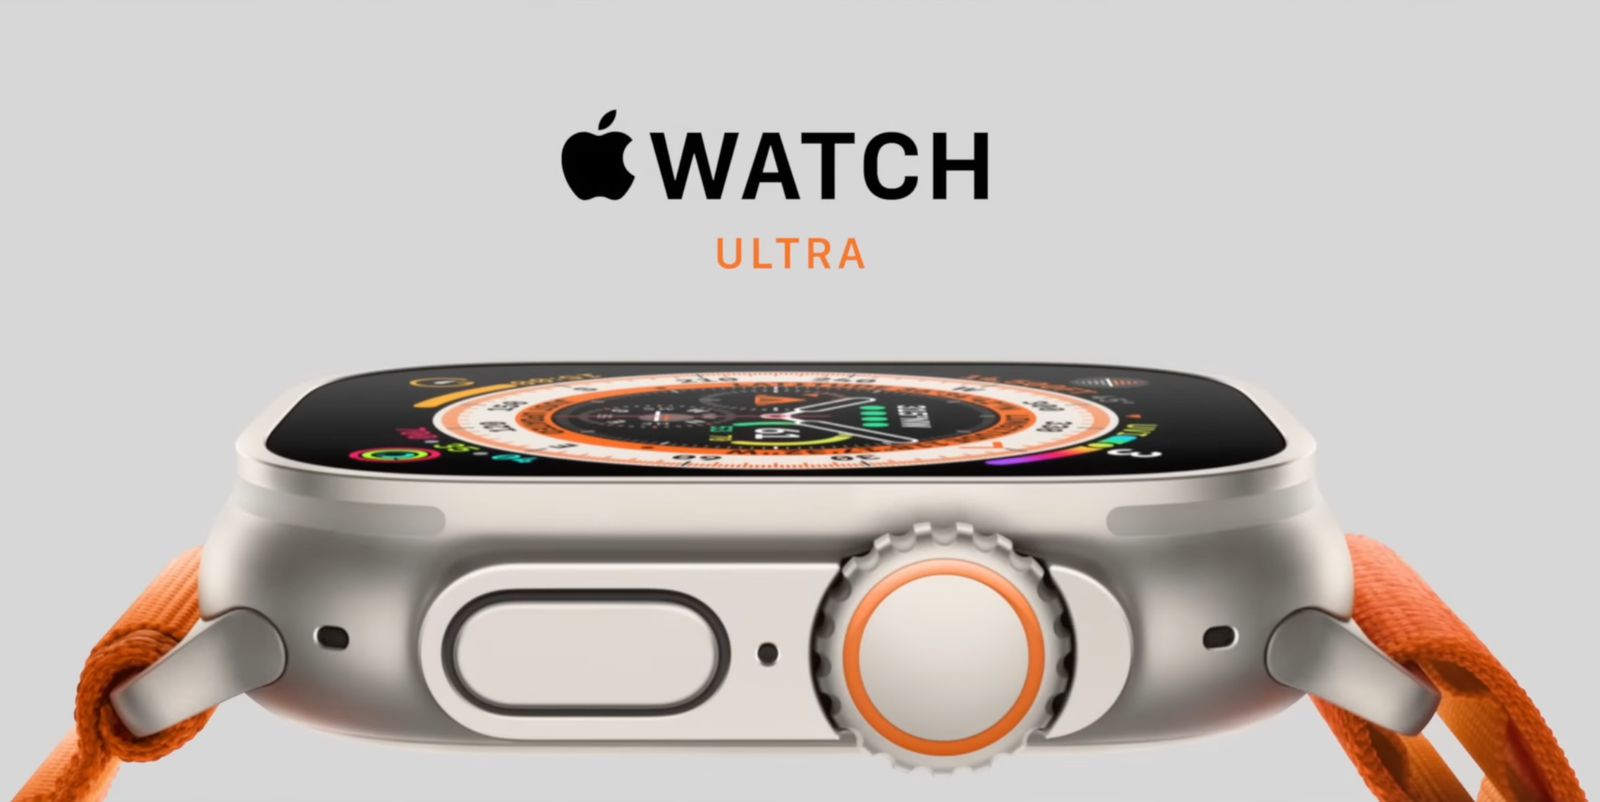 Garmin menanggapi Apple Watch Ultra: “Kami mengukur masa pakai baterai dalam hitungan bulan, bukan jam.”